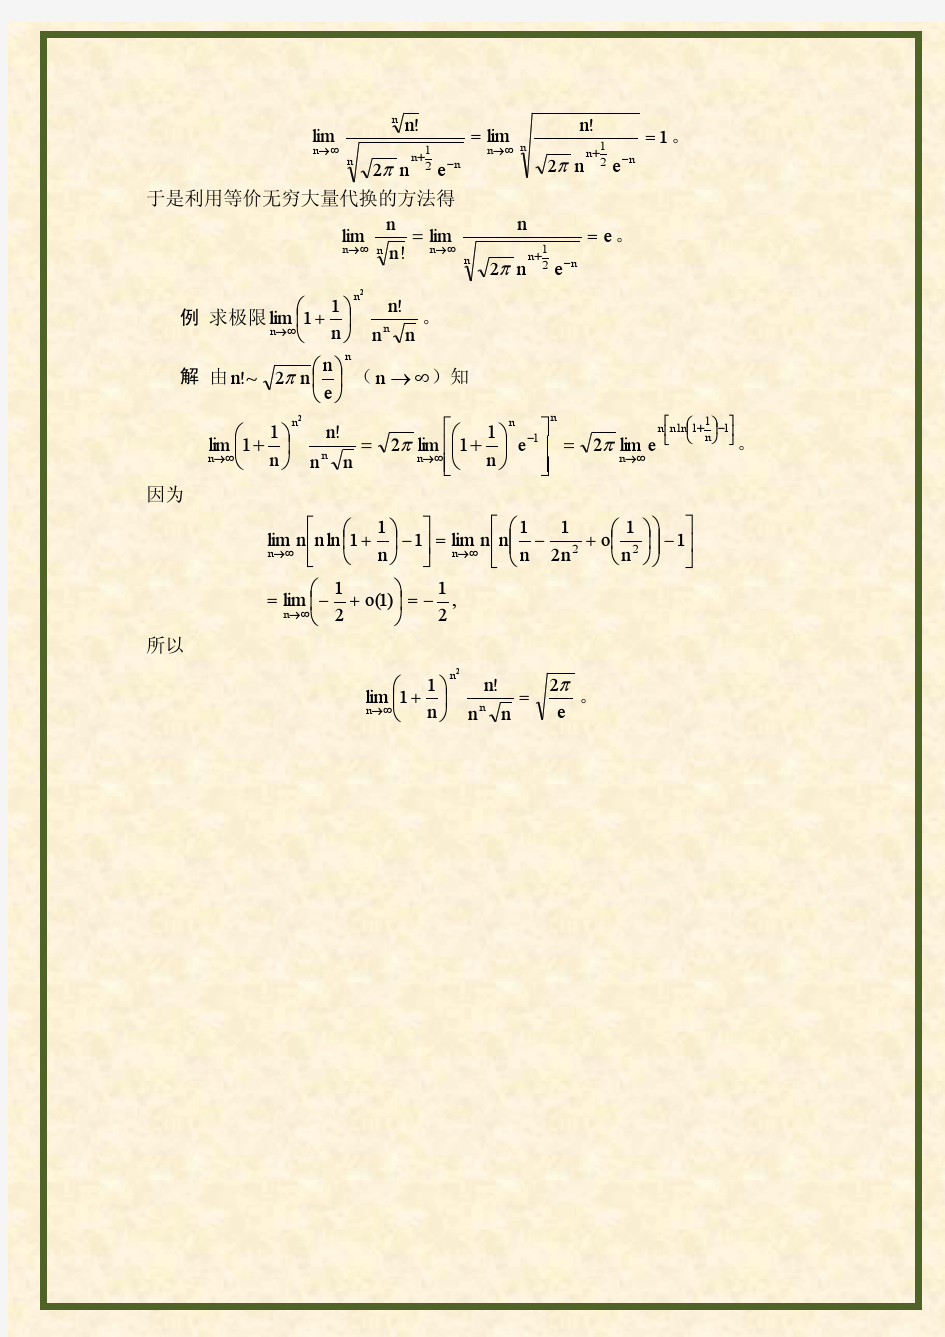 Γ函数与Stirling公式